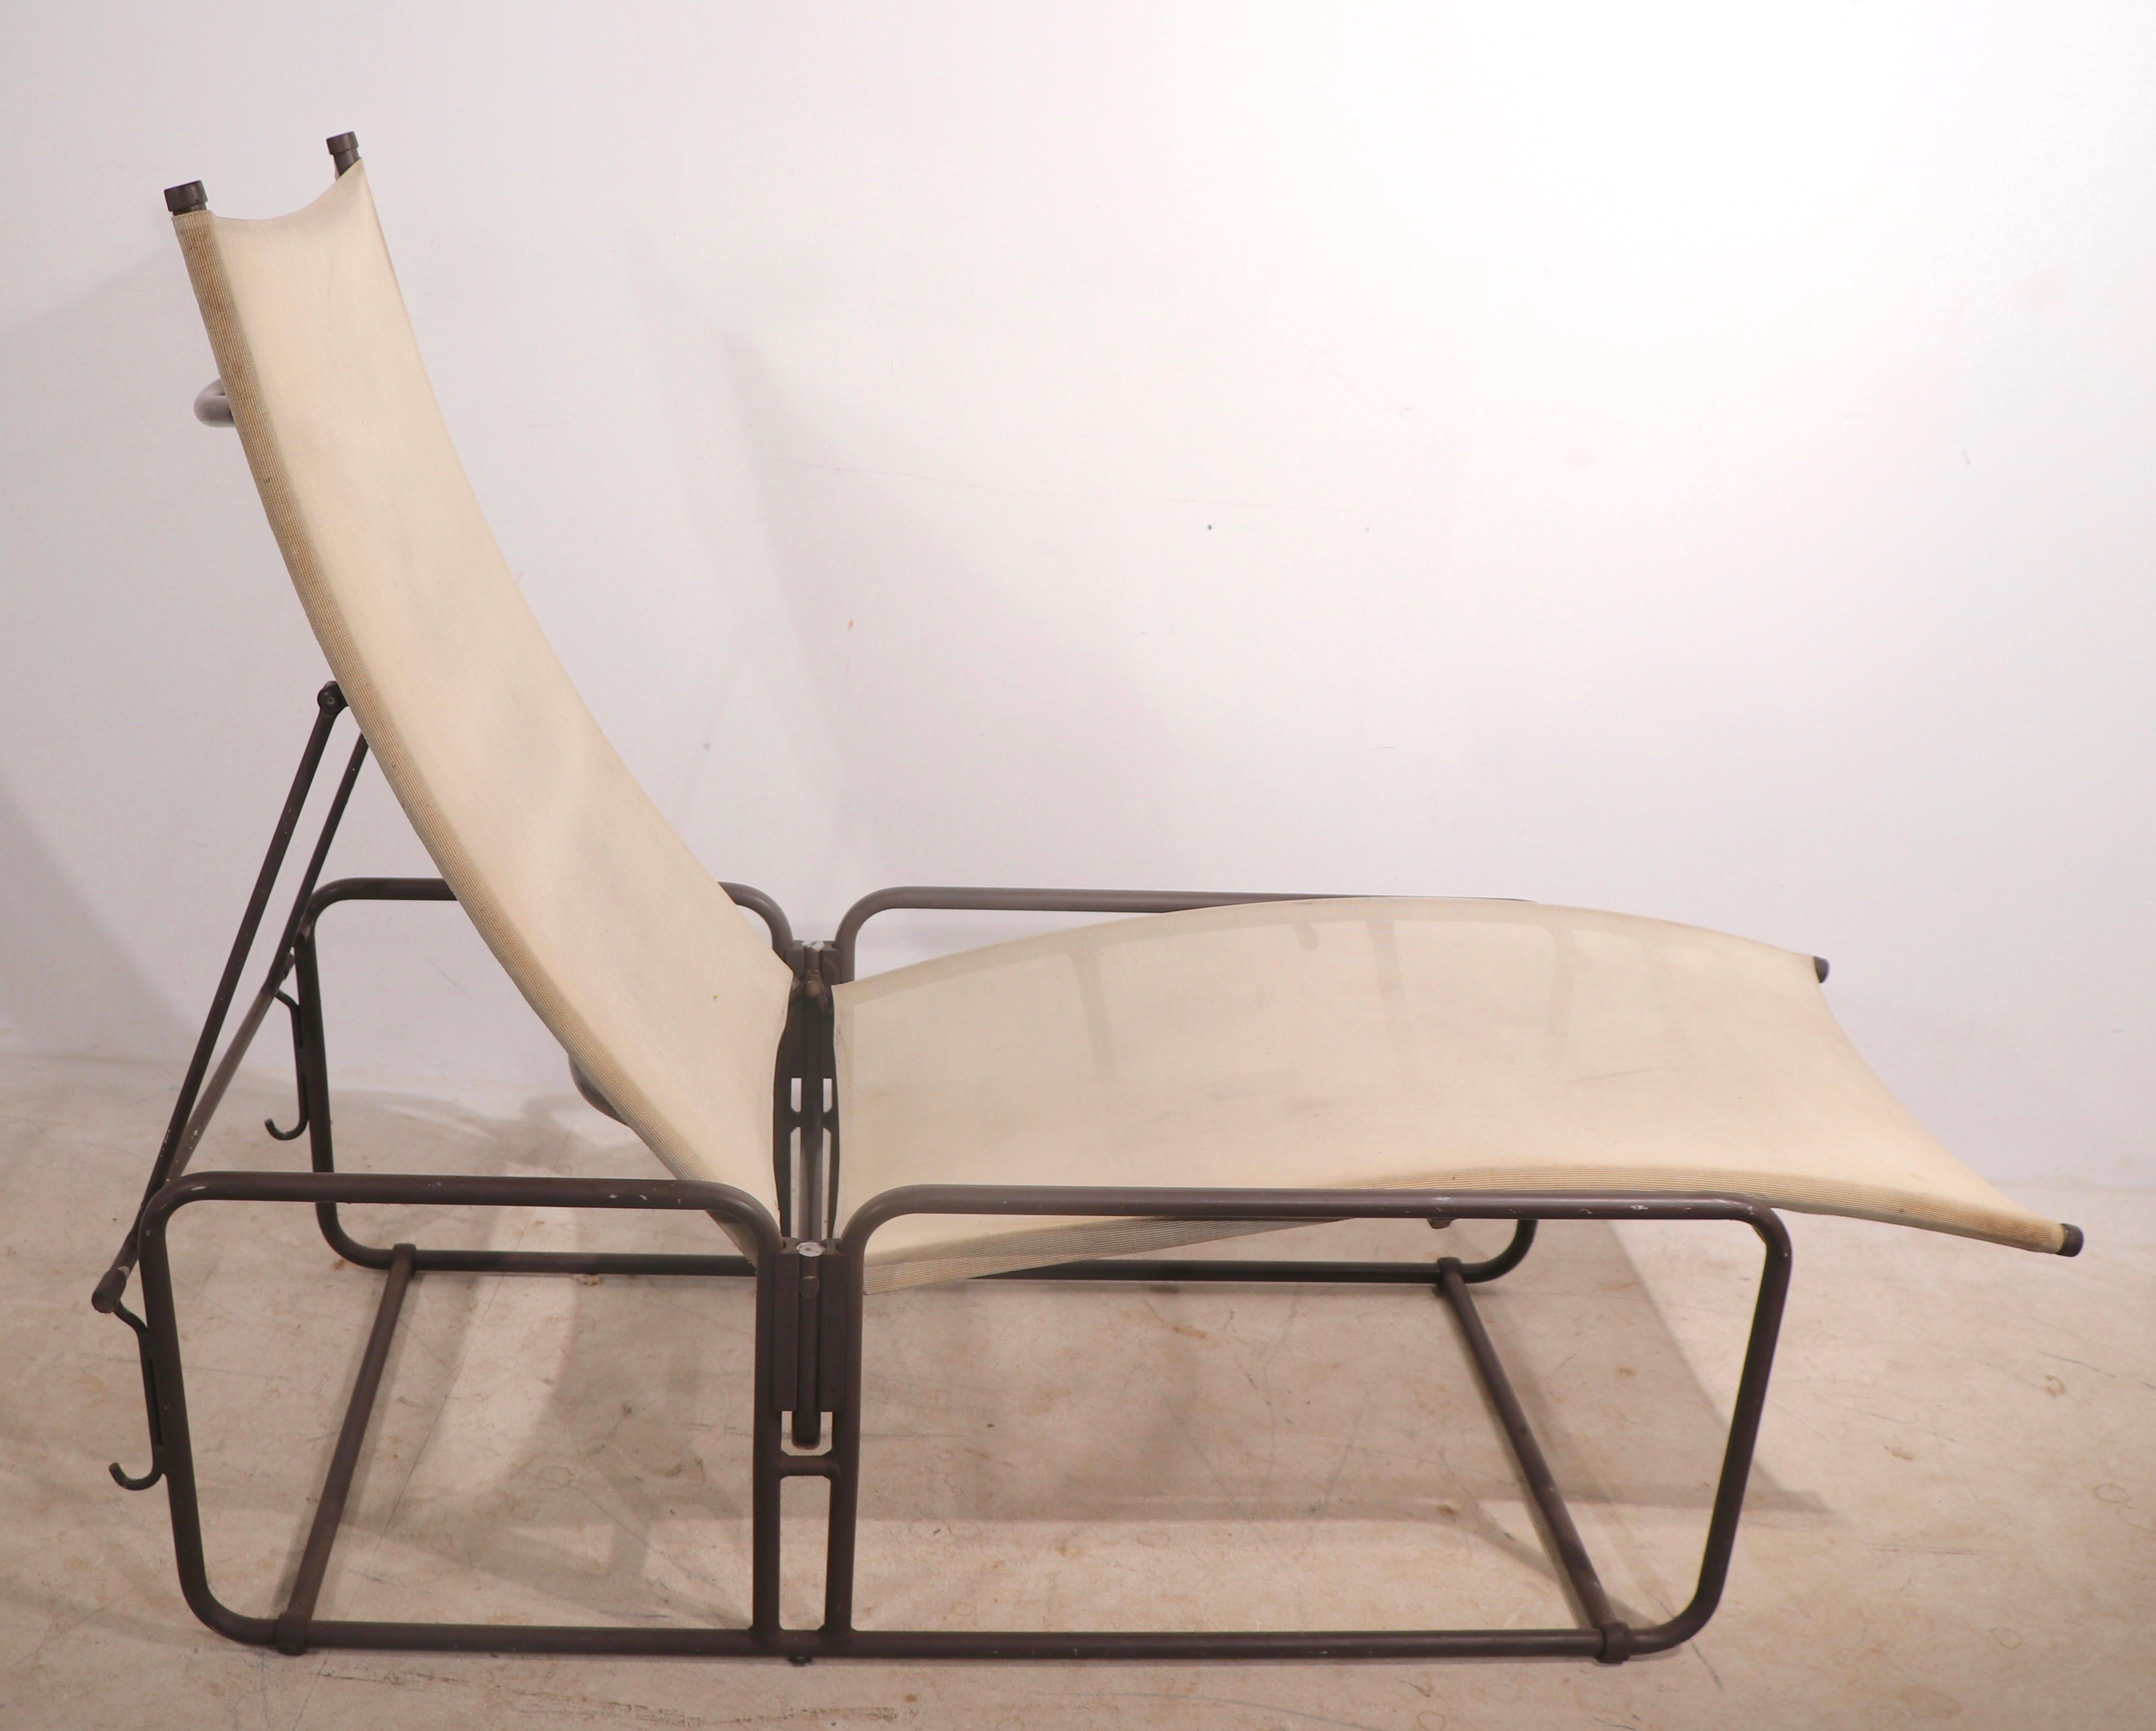 Klassische Chaiselongue im kalifornisch-modernen Stil der 1970er Jahre für Garten, Terrasse und Pool aus der Nomad-Serie von Brown Jordan. Die Liege hat einen leichten Aluminiumrahmen und eine raffinierte Sitzfläche und Rückenlehne aus Segeltuch.